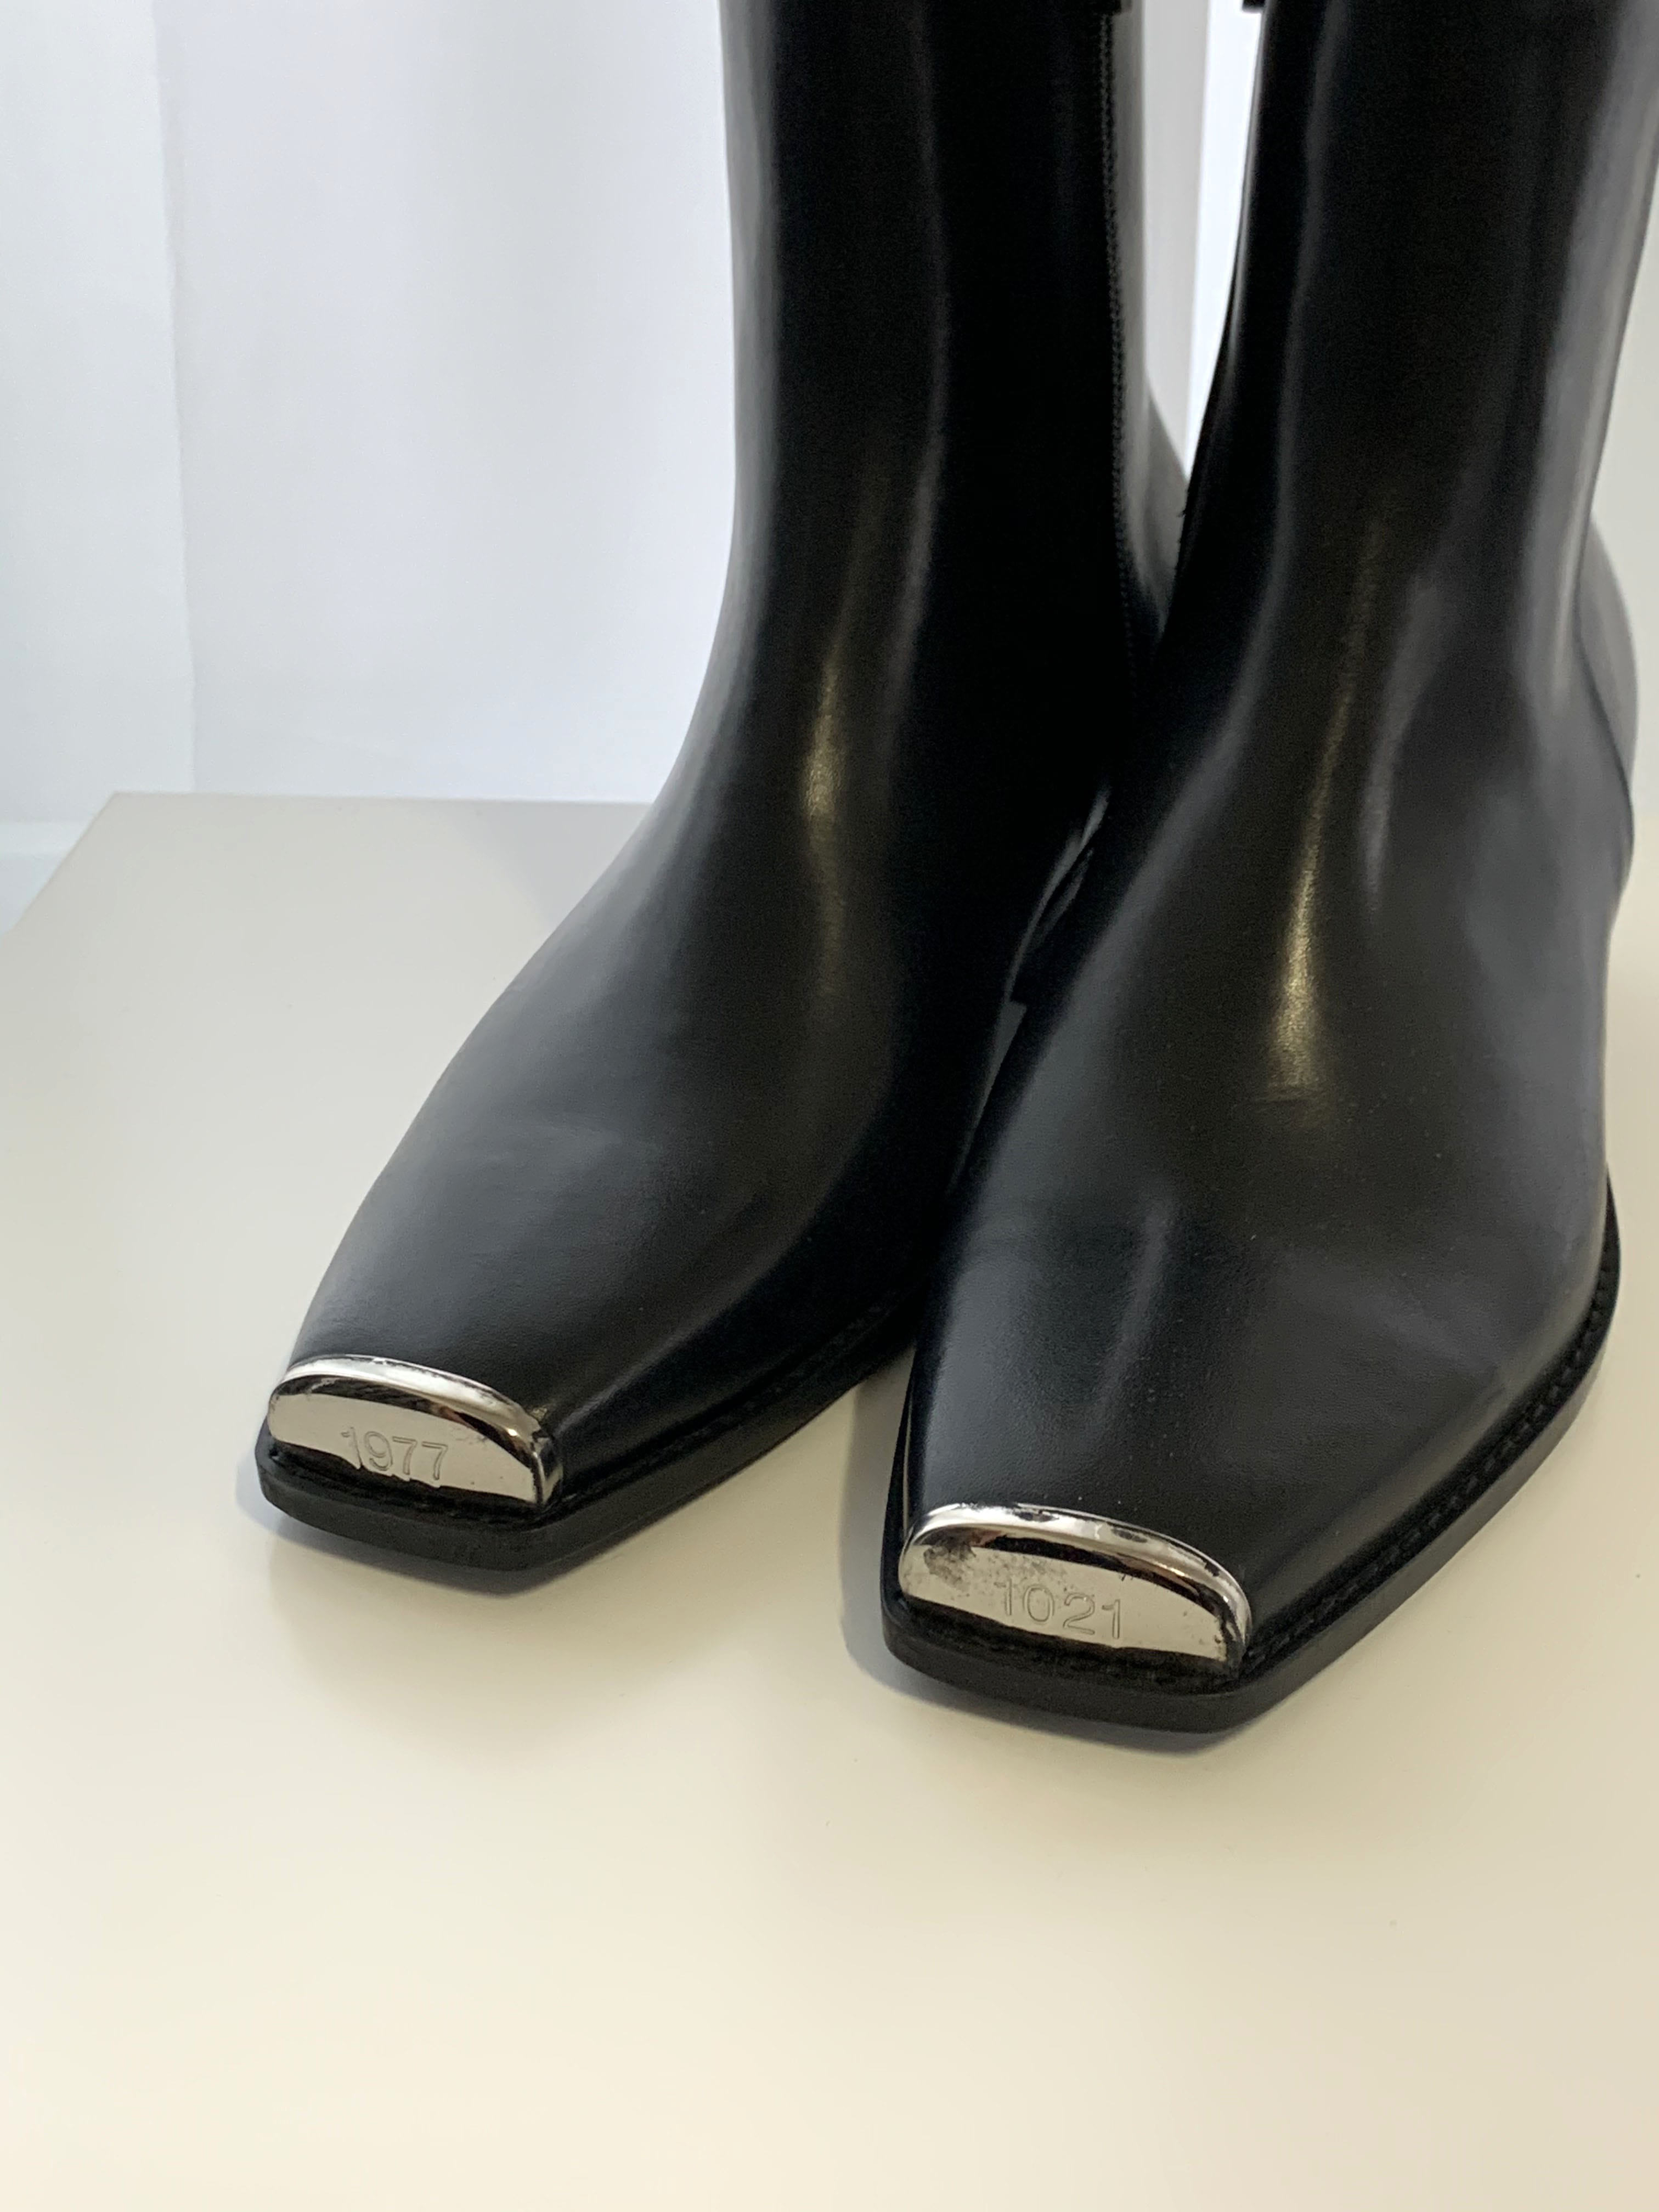 [Handmade]Dear Steel Chelsea Boots